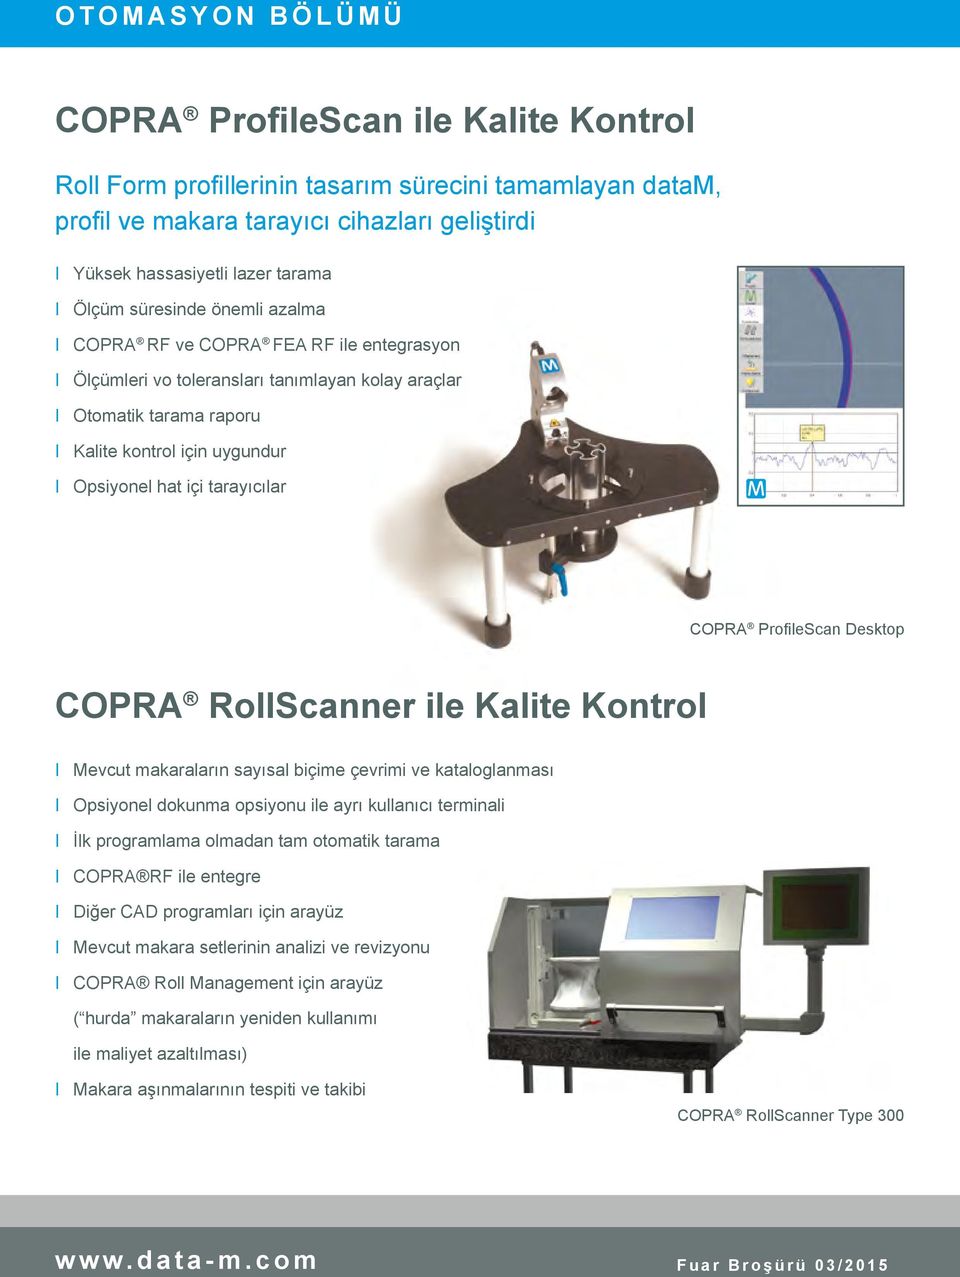 içi tarayıcılar COPRA ProfileScan Desktop COPRA RollScanner ile Kalite Kontrol I Mevcut makaraların sayısal biçime çevrimi ve kataloglanması I Opsiyonel dokunma opsiyonu ile ayrı kullanıcı terminali